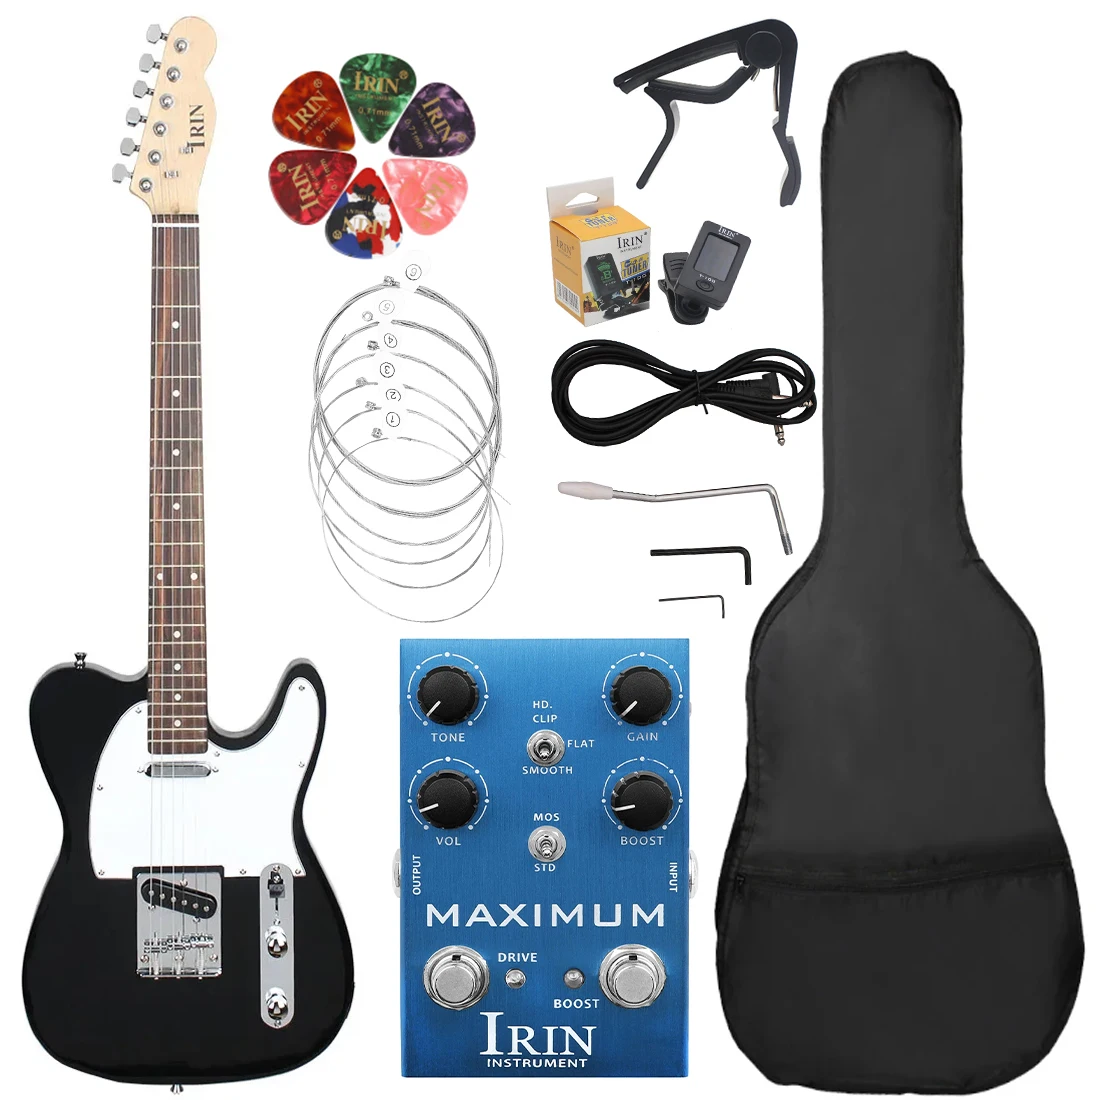 

Черная 39-дюймовая электрическая гитара с 6 струнами, электрическая гитара с кленовым грифом, 22 лада, гитара с сумкой, детали и аксессуары для гитары